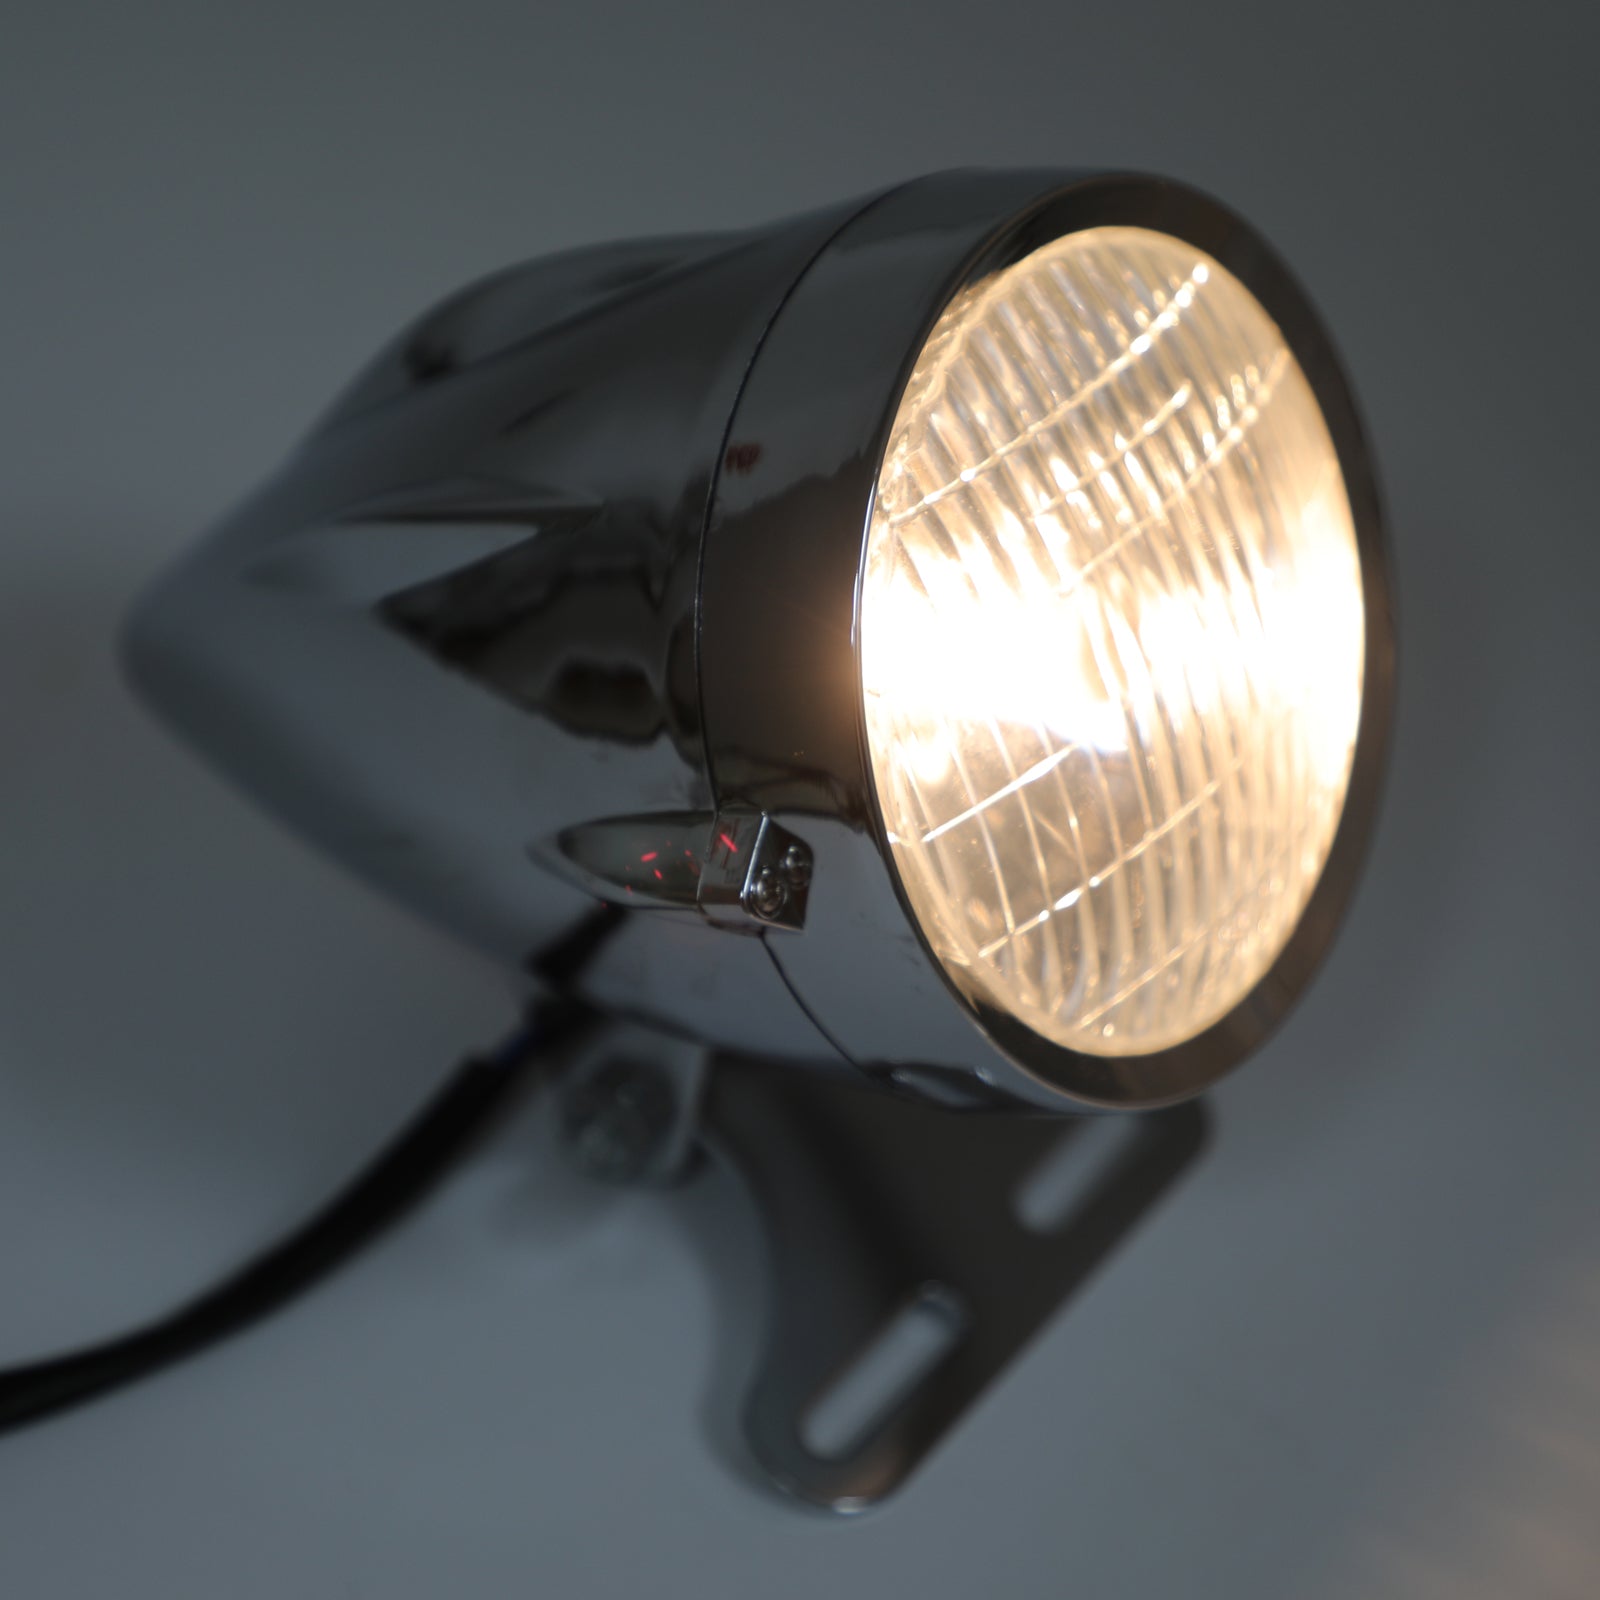 Chrome Bullet Headlight Lamp 4 3/4" Motorcycle For Chopper Bobber Custom